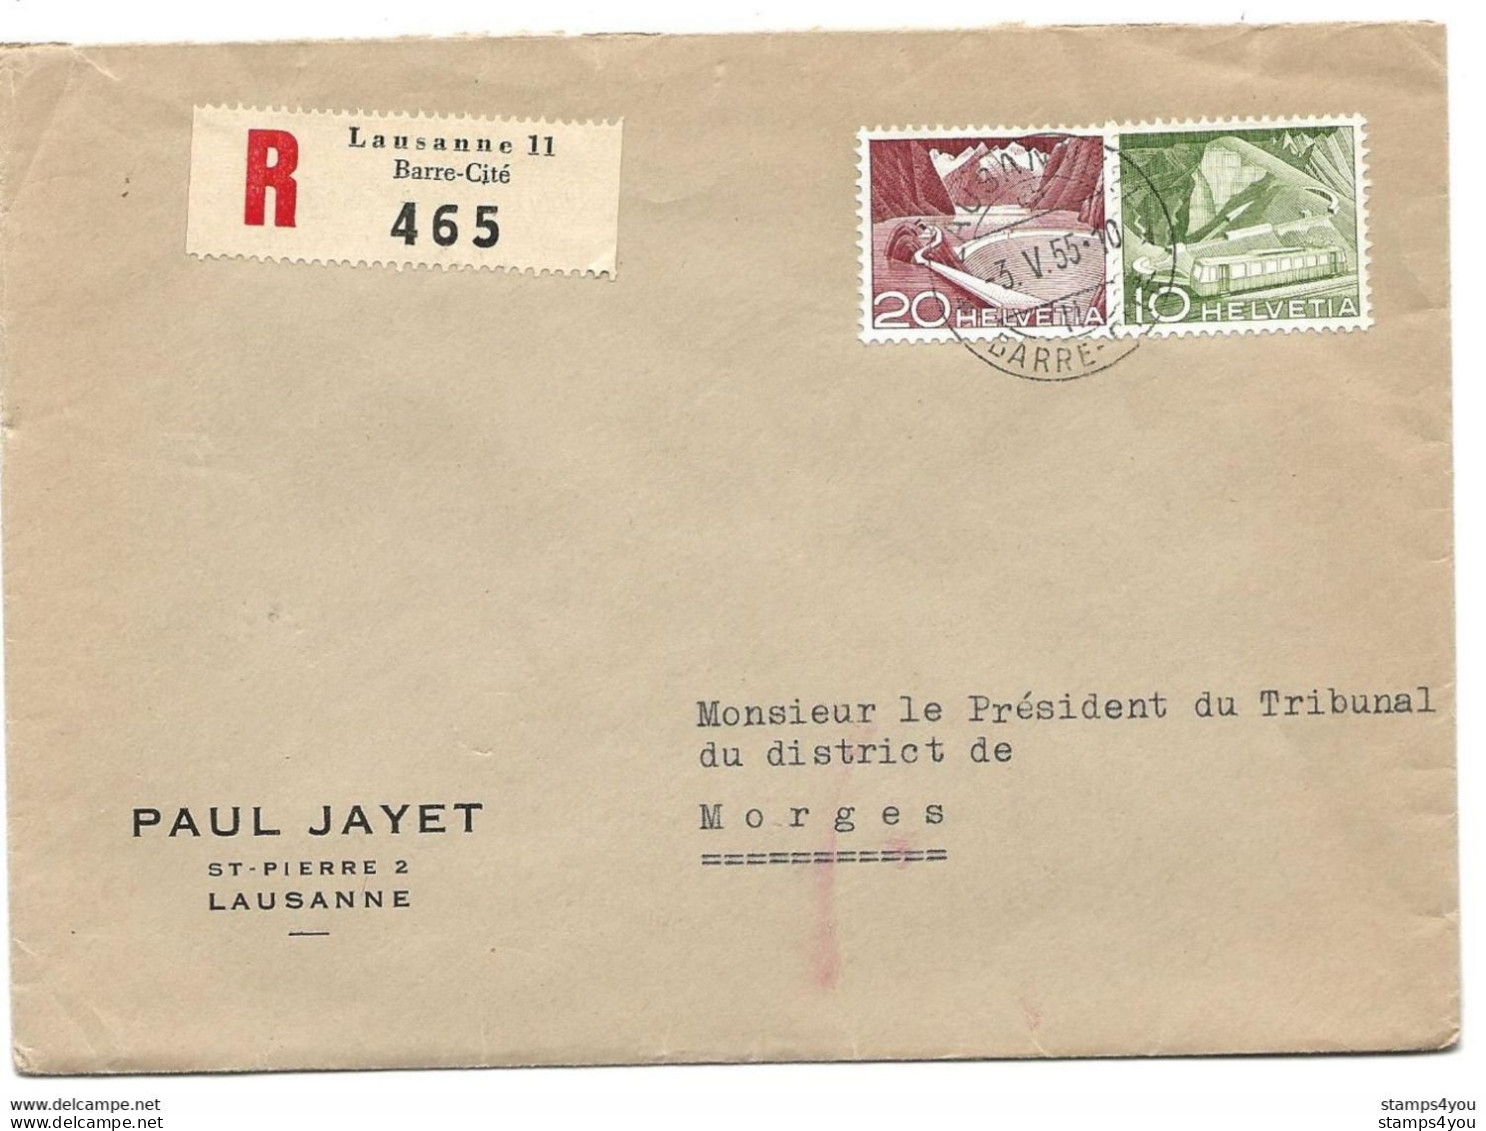 115 - 22 - Enveloppe Recommandée Envoyée De Lausanne  Gare-Cité 1955 - Storia Postale